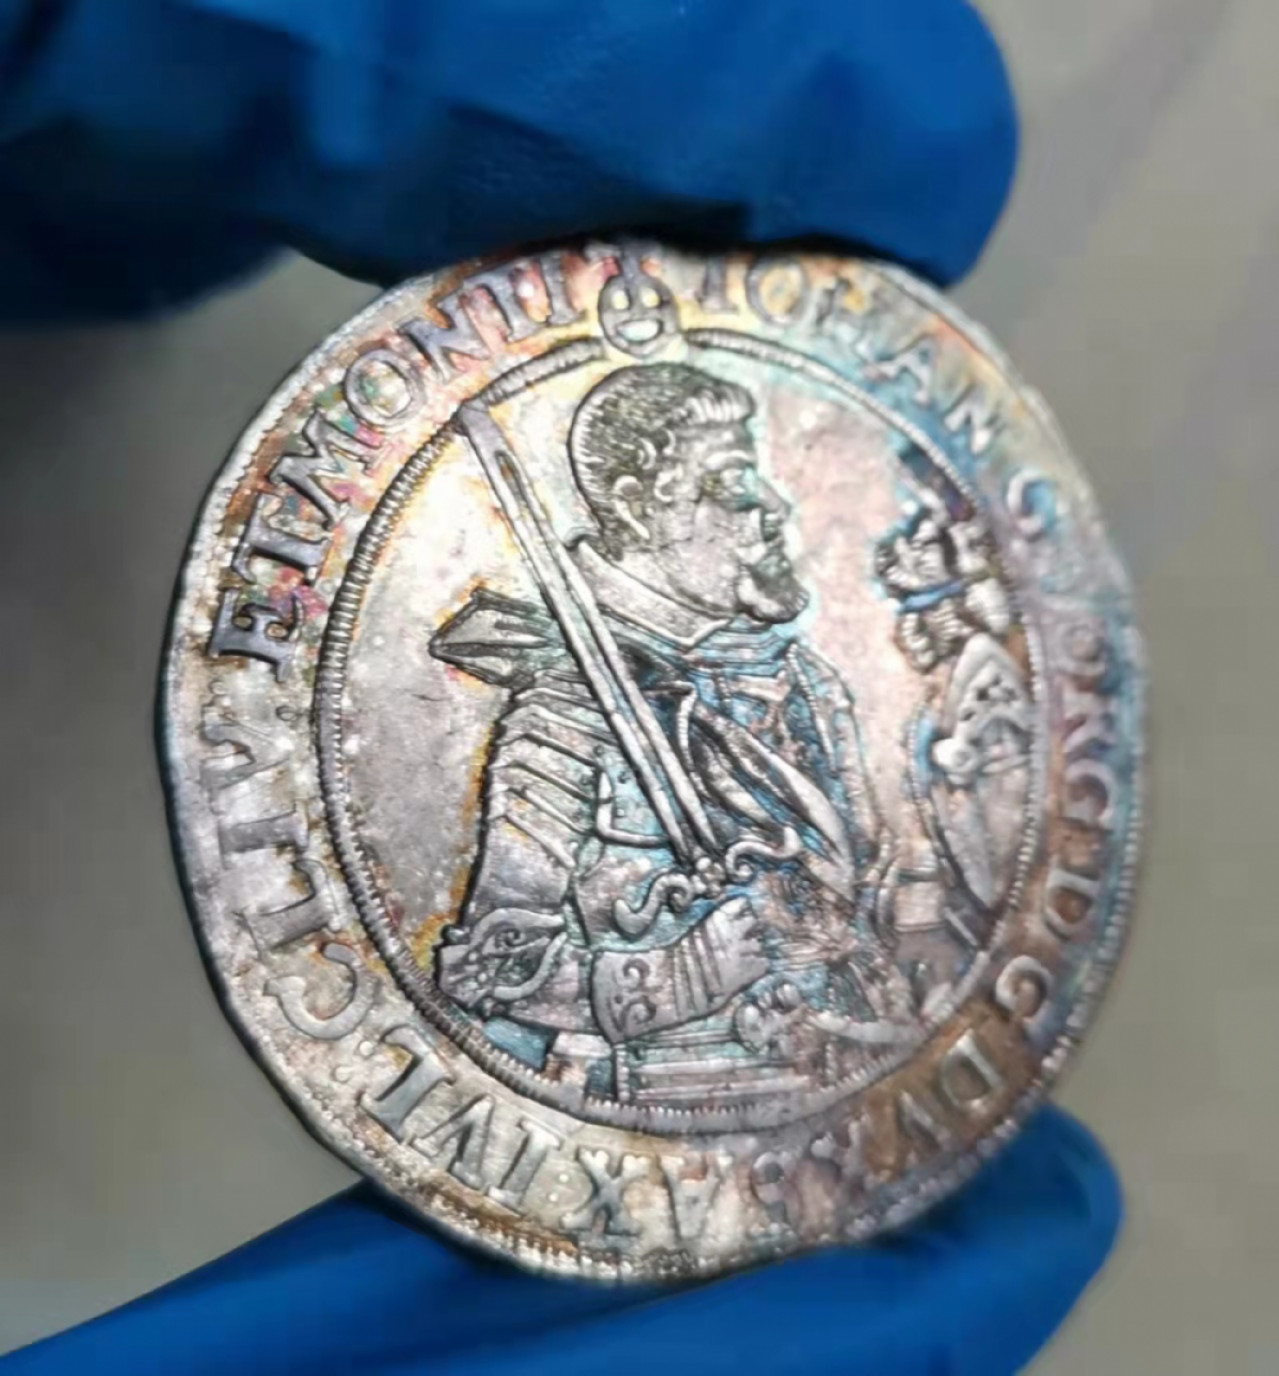 五彩未磨损1624年萨克森神罗43mm大银币